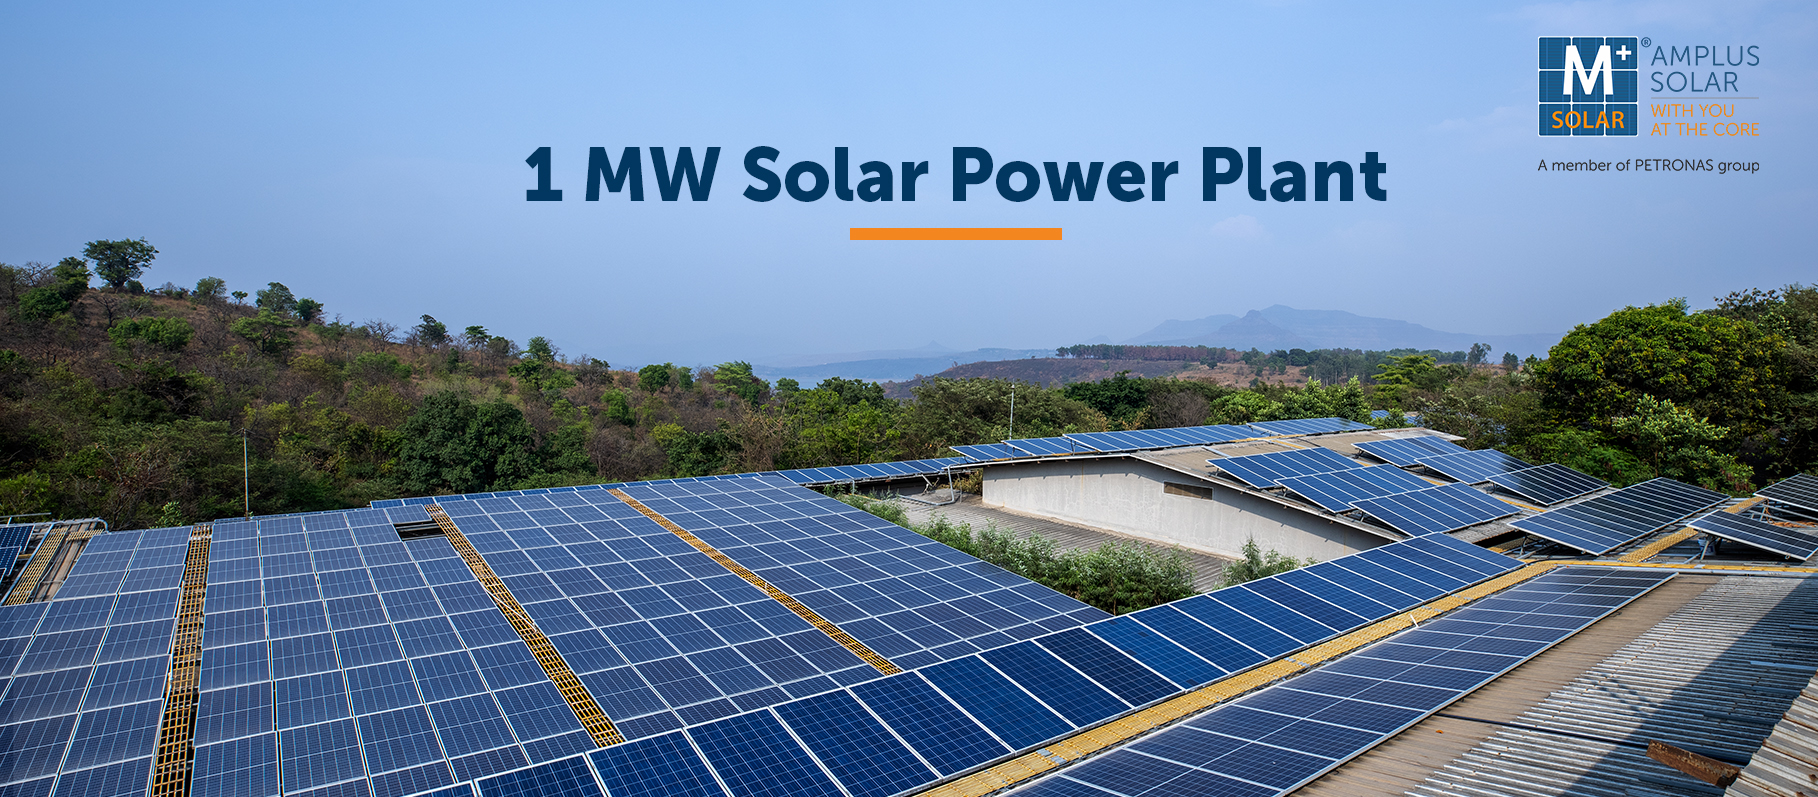 1 MW Solar Power Plant